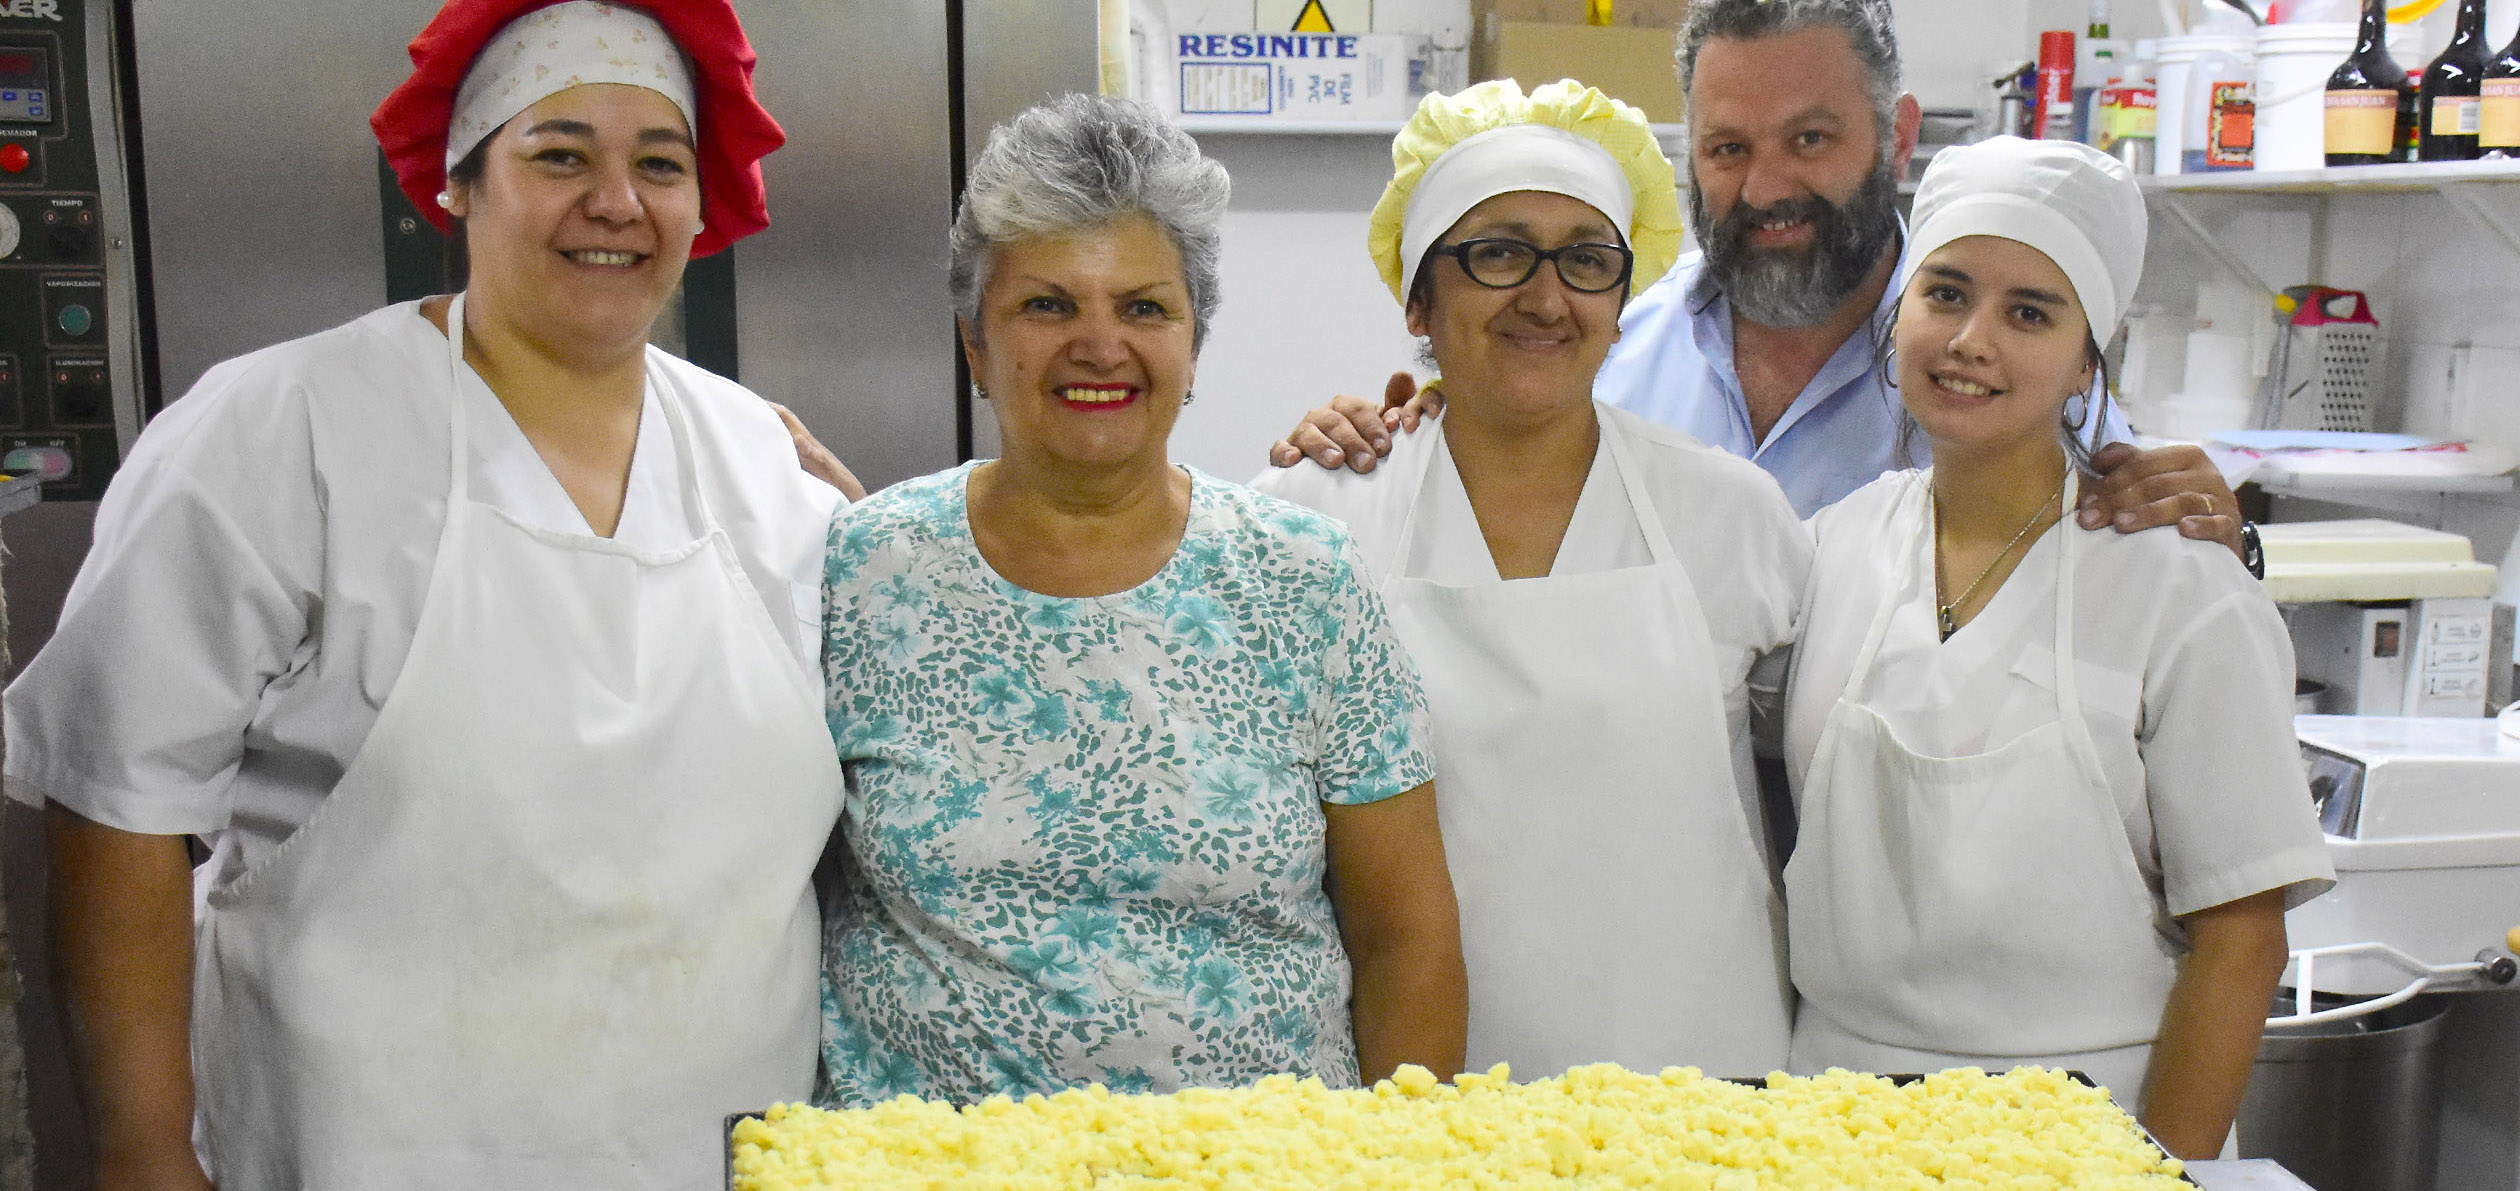 Las pasteleras a cargo de la tarta y los propietarios de Panaderías Mónica, emprendimiento familiar que cumple 60 años en el Alto Valle. (Foto Emiliana Cantera)